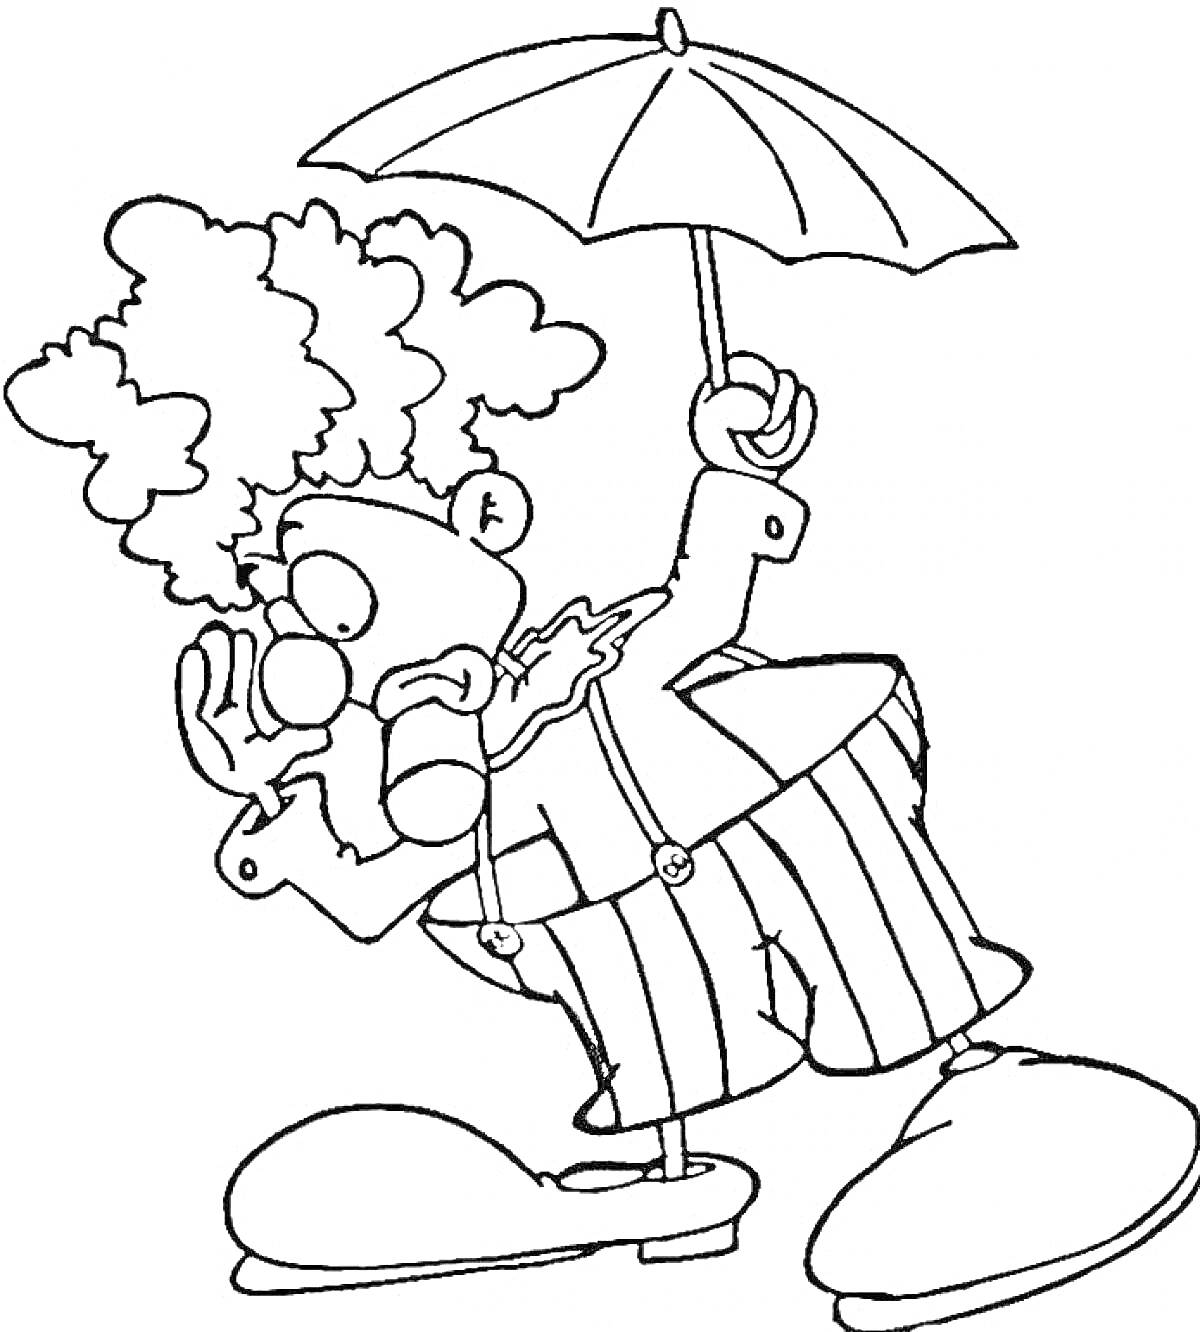 Раскраска Клоун с зонтом в полосатых брюках и больших ботинках